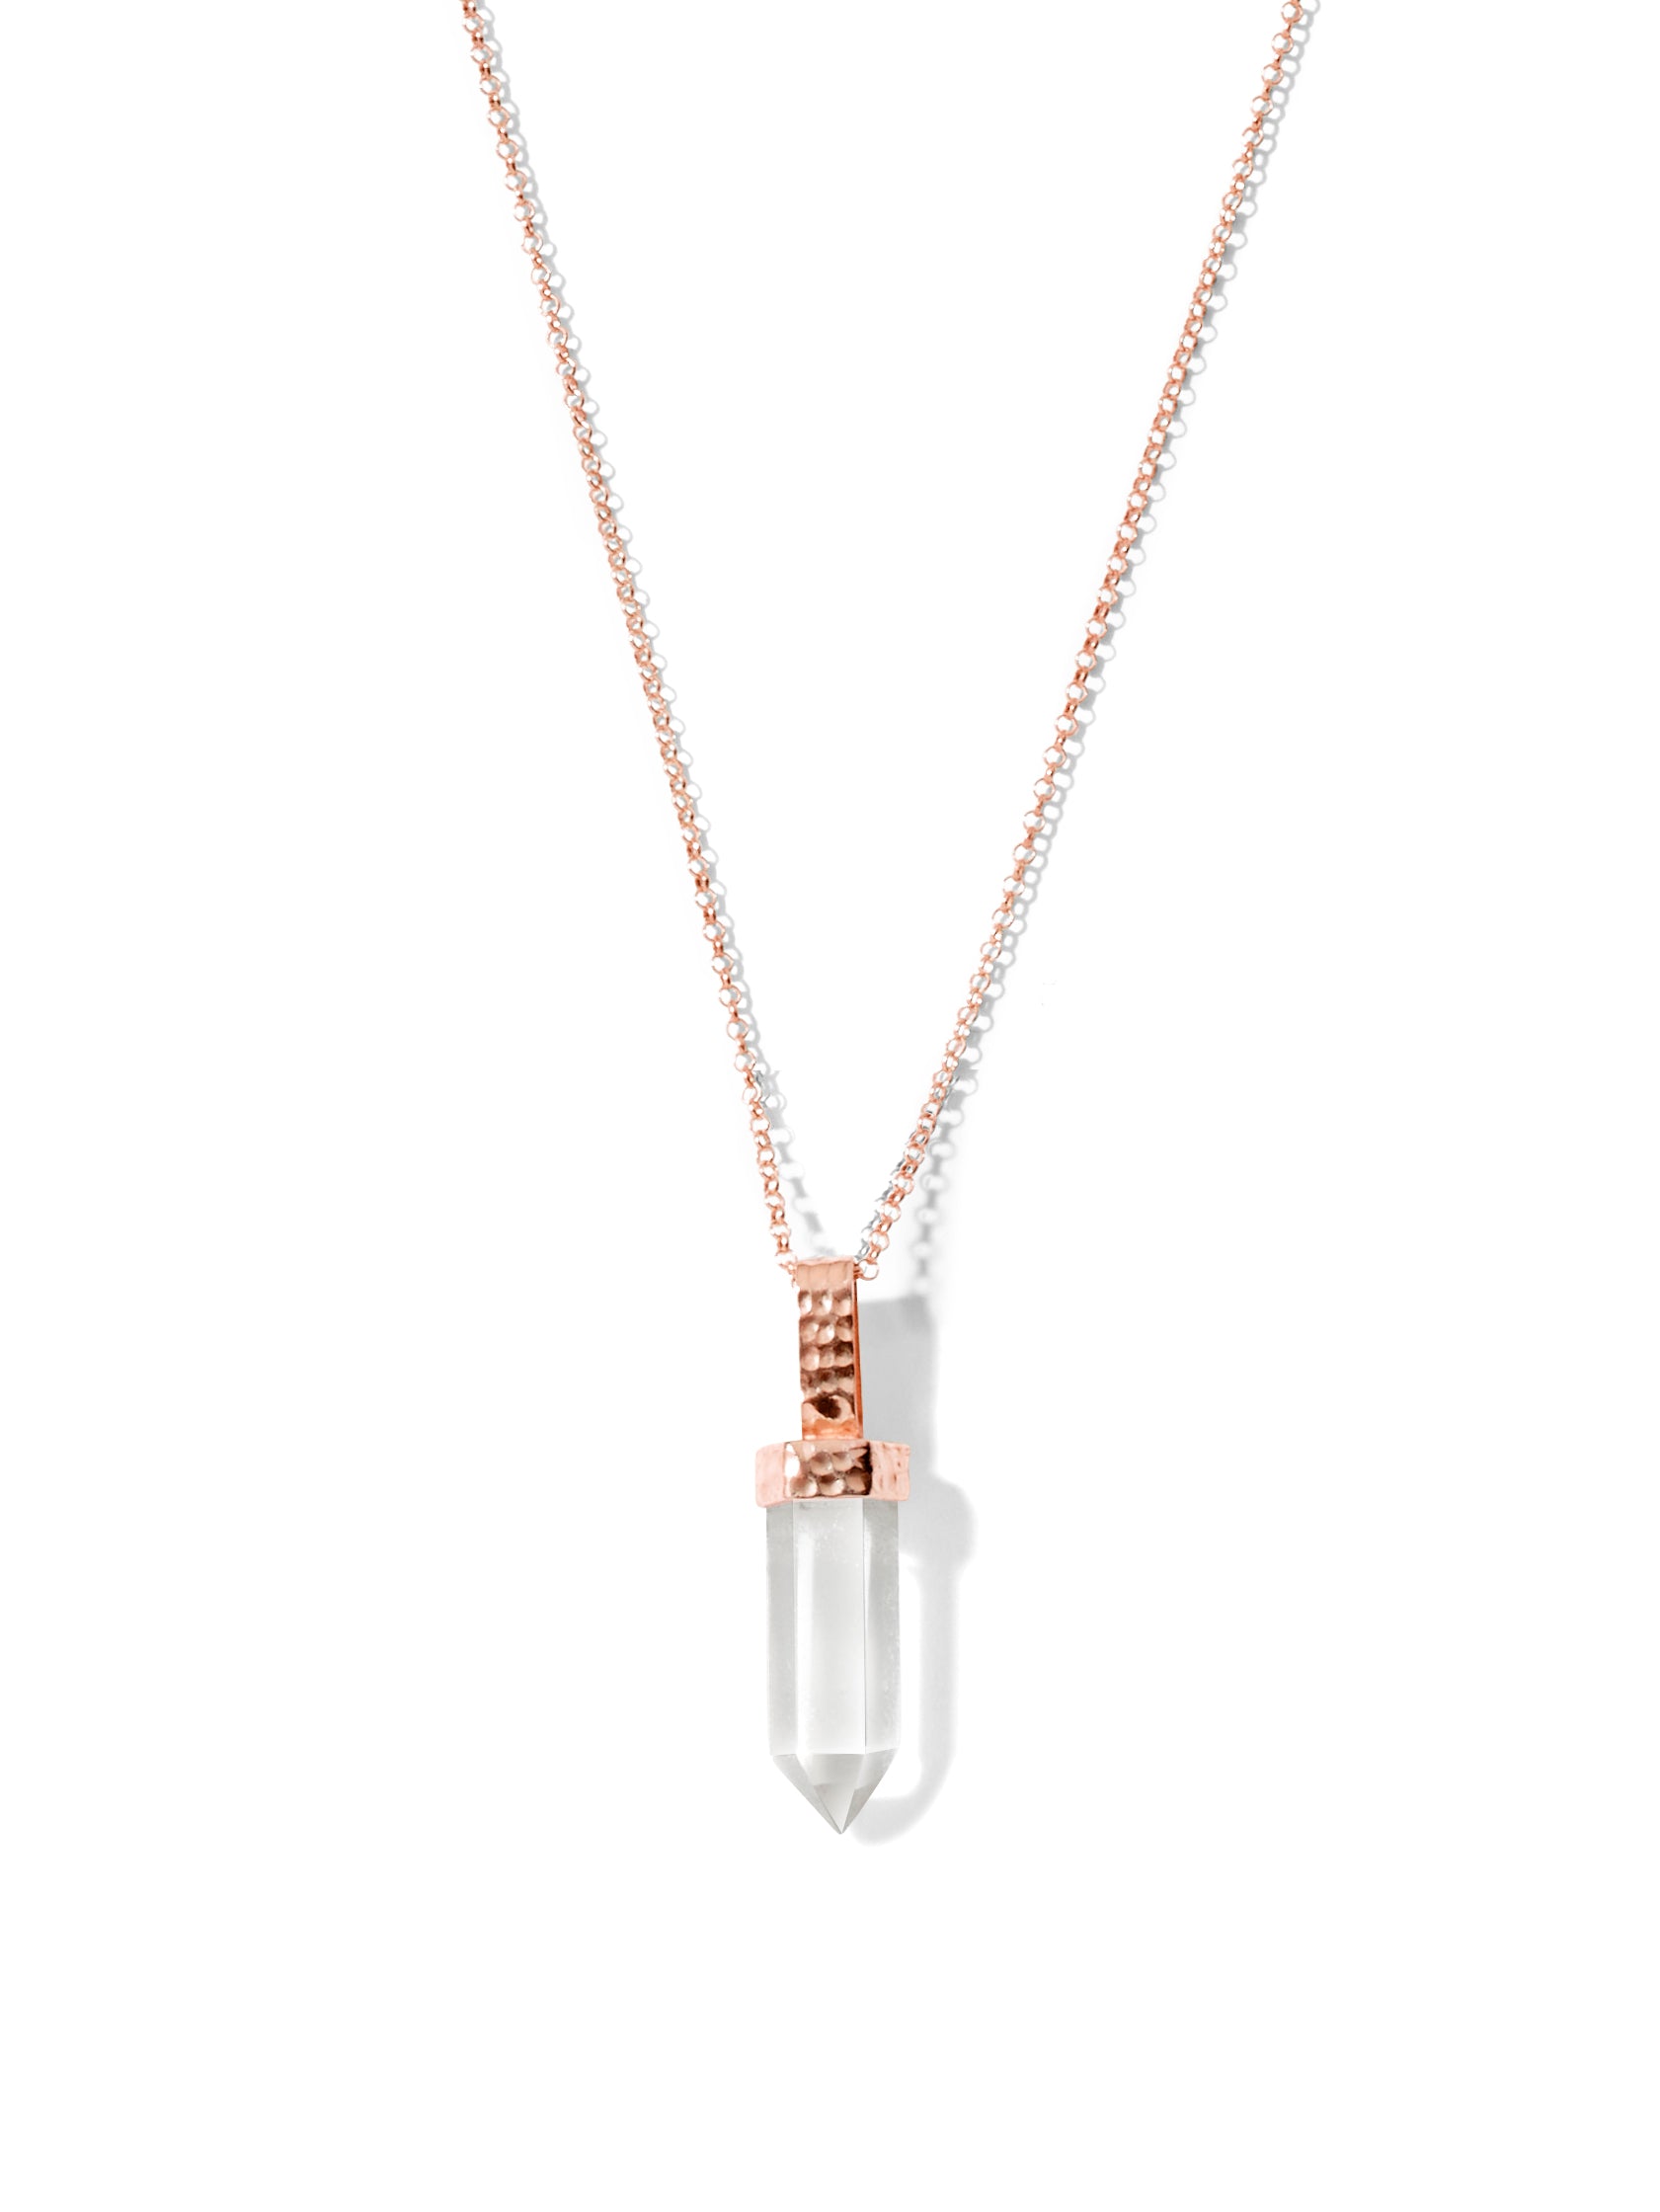 halcyon necklace | clear quartz